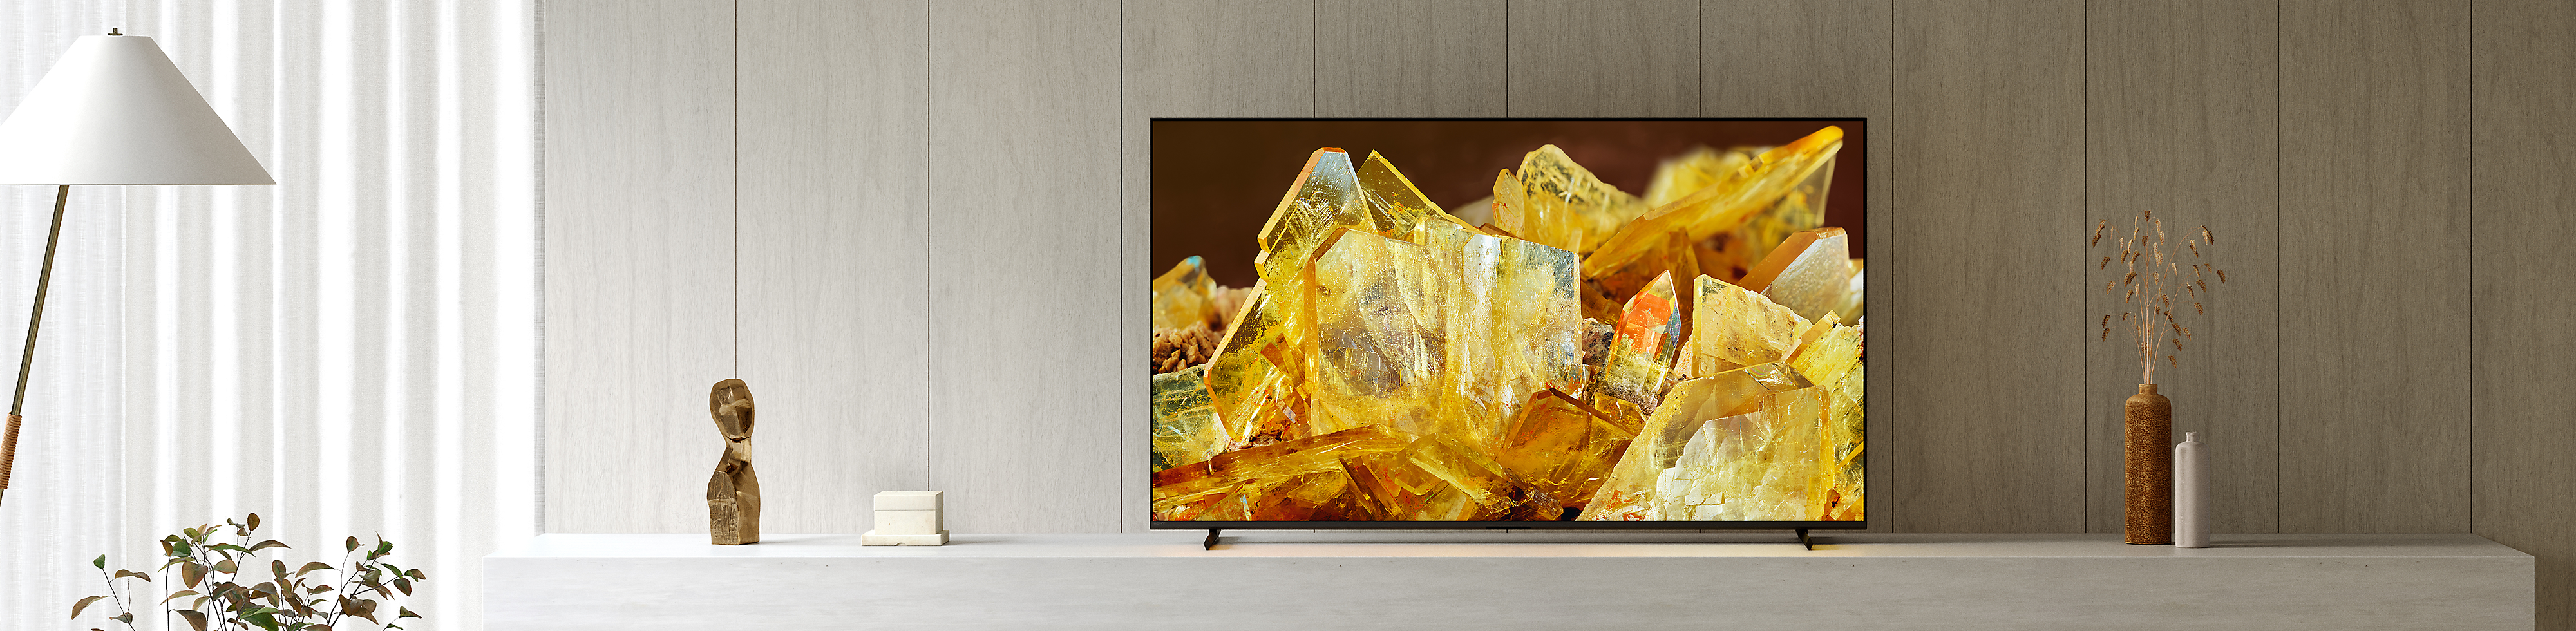 Televizor BRAVIA XR într-o sufragerie, cu imagine cu cristale galbene în prim-plan